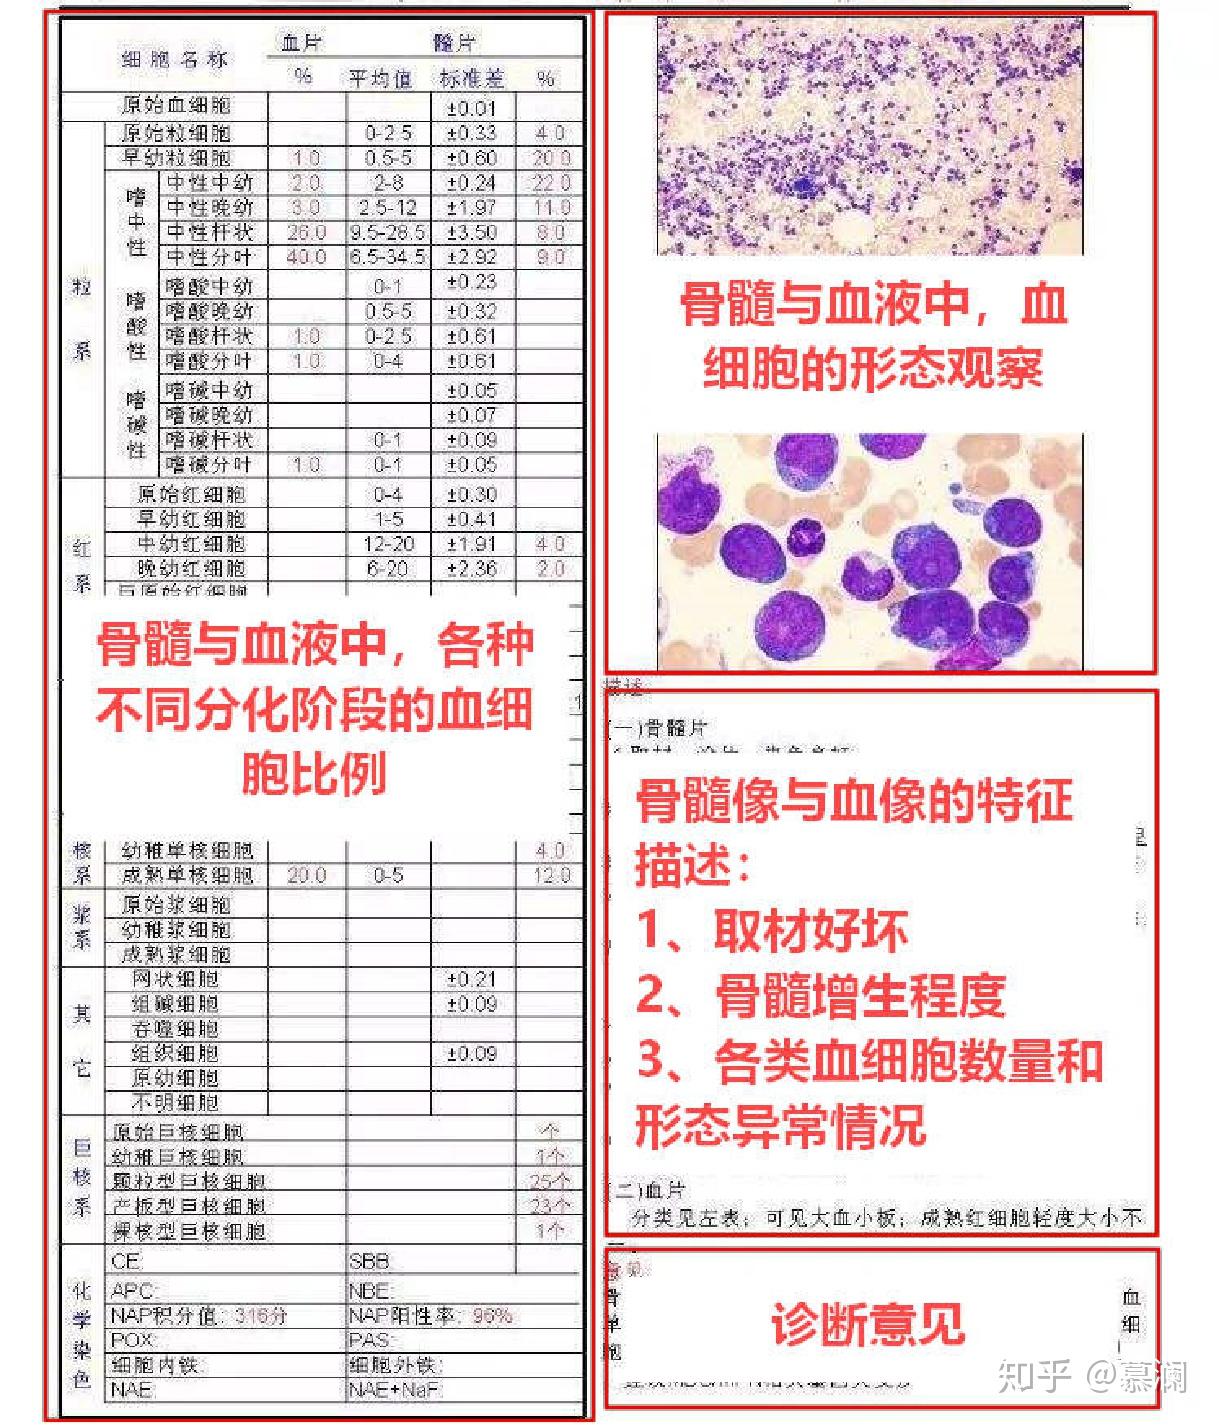 报告主要有4部分:各类血细胞的比例计数,显微镜观察的结果图示,骨髓象